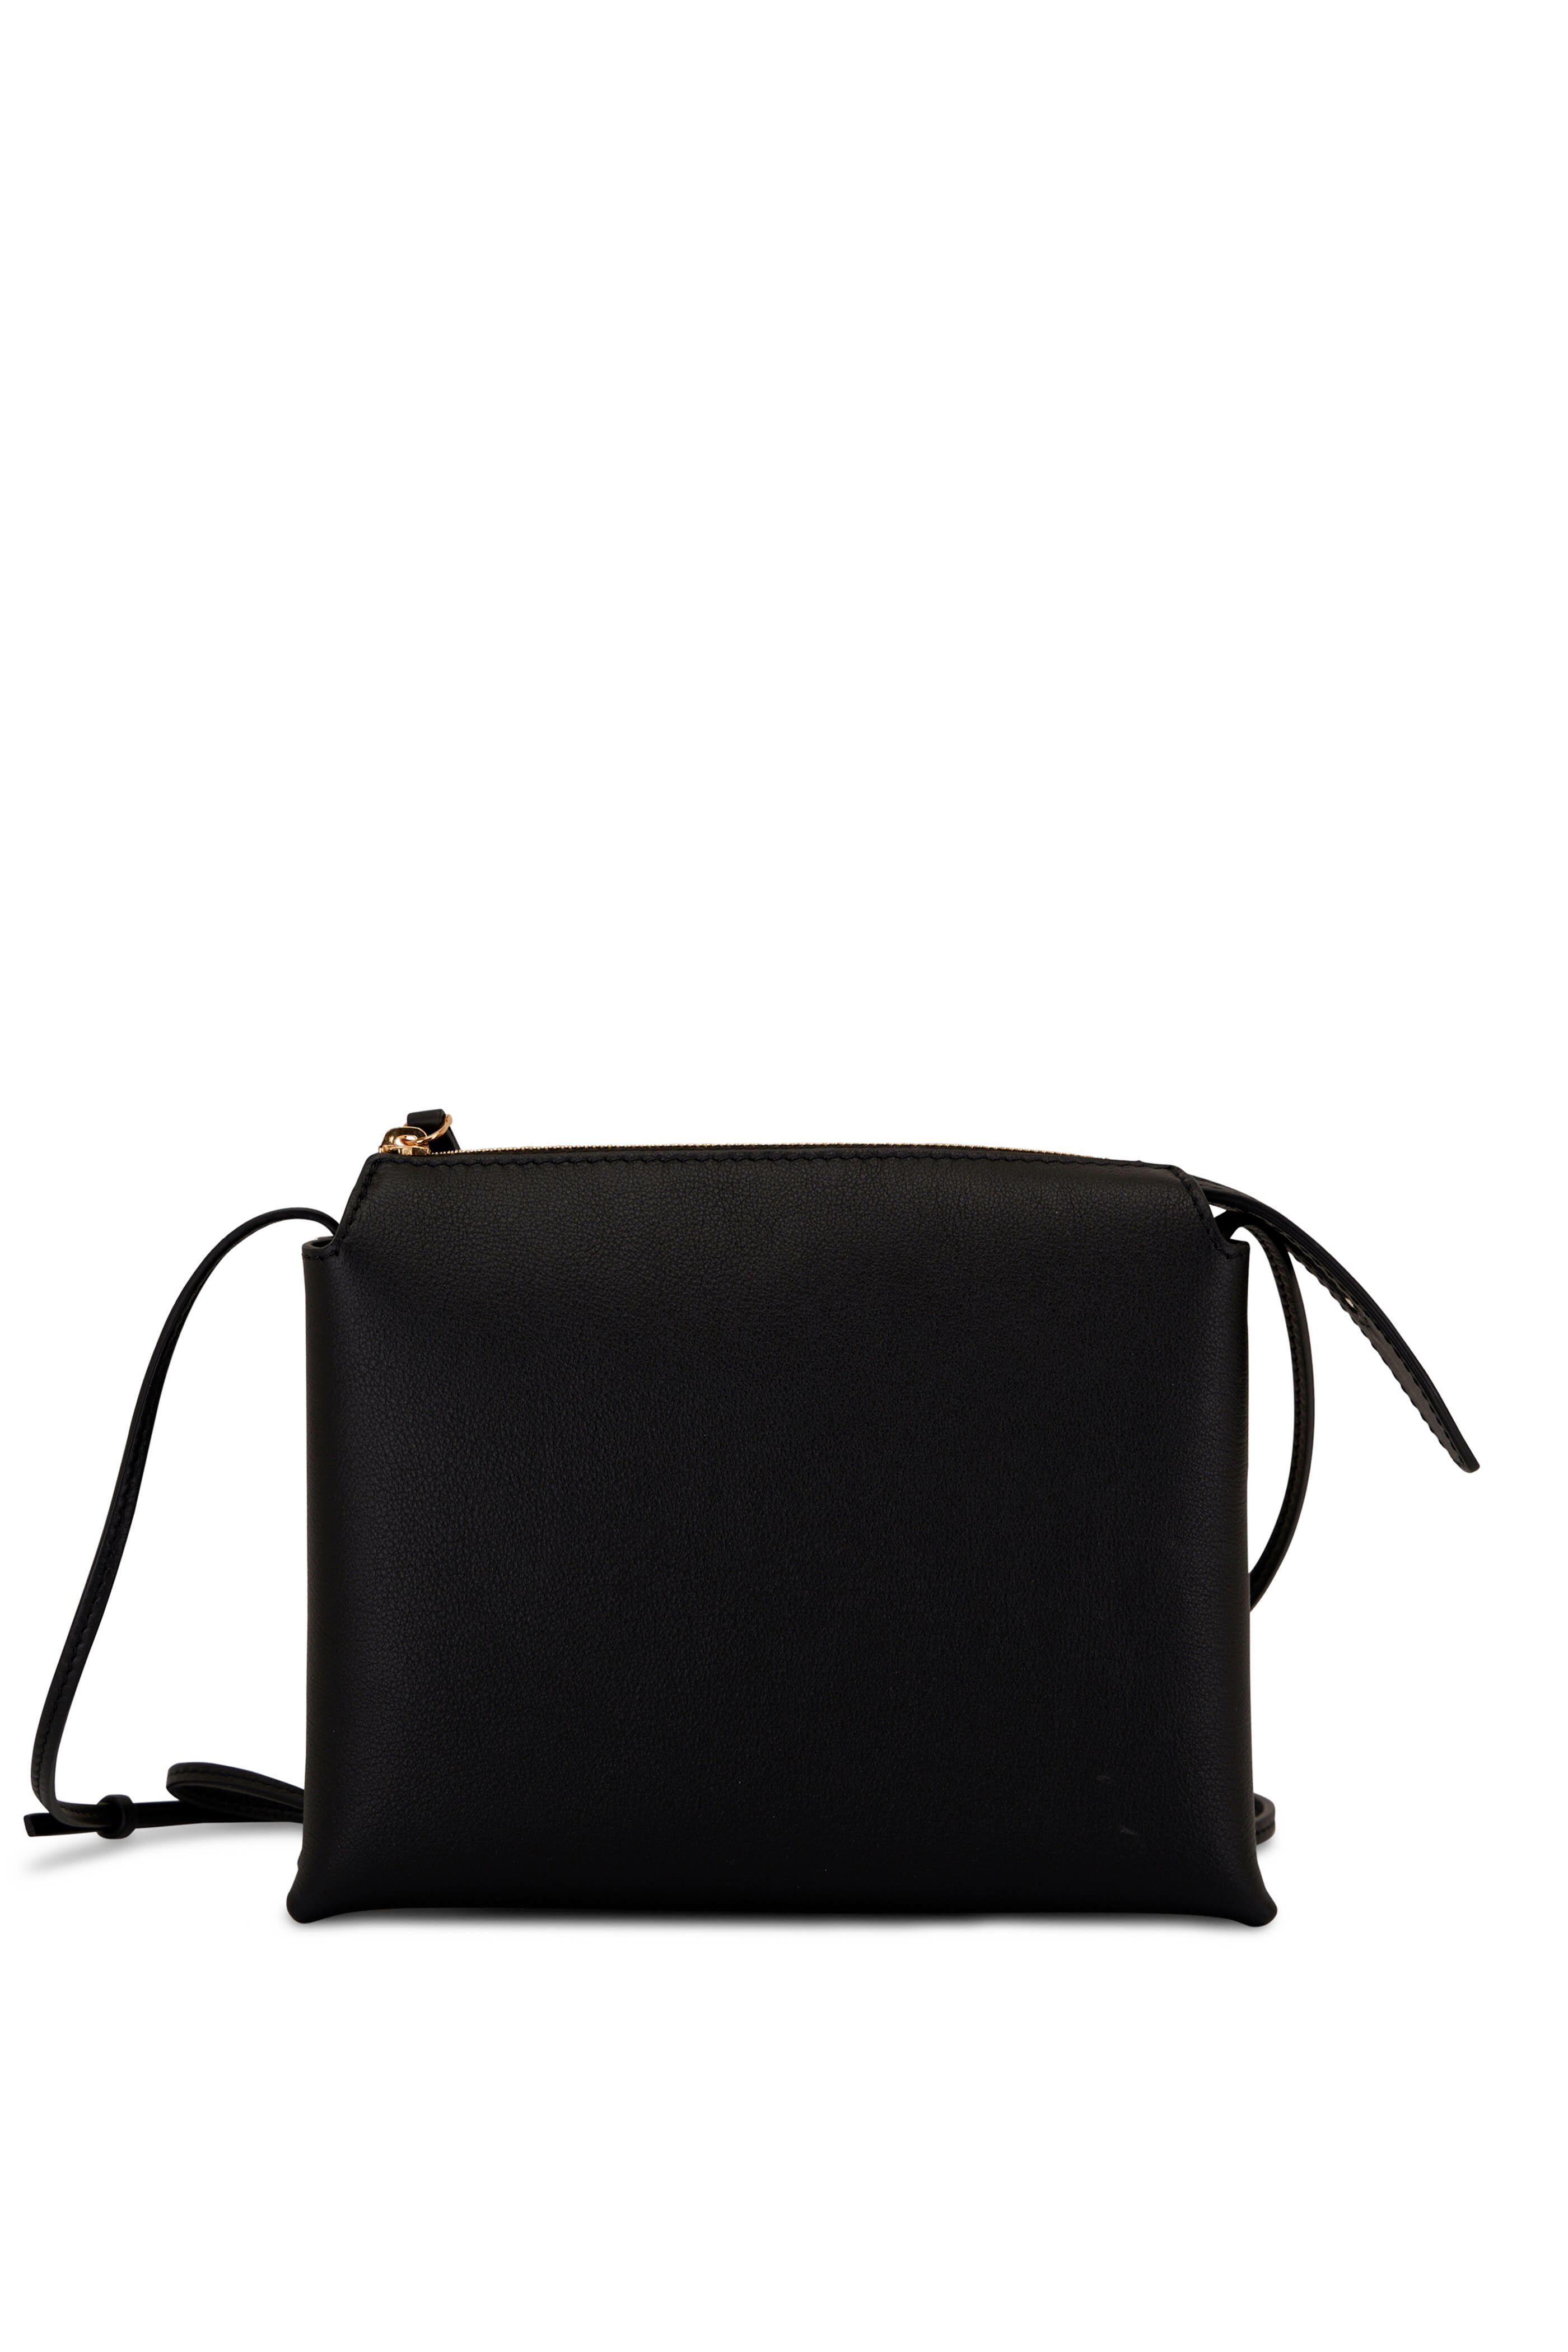 The Row - Nu Mini Twin Black Leather Crossbody Bag